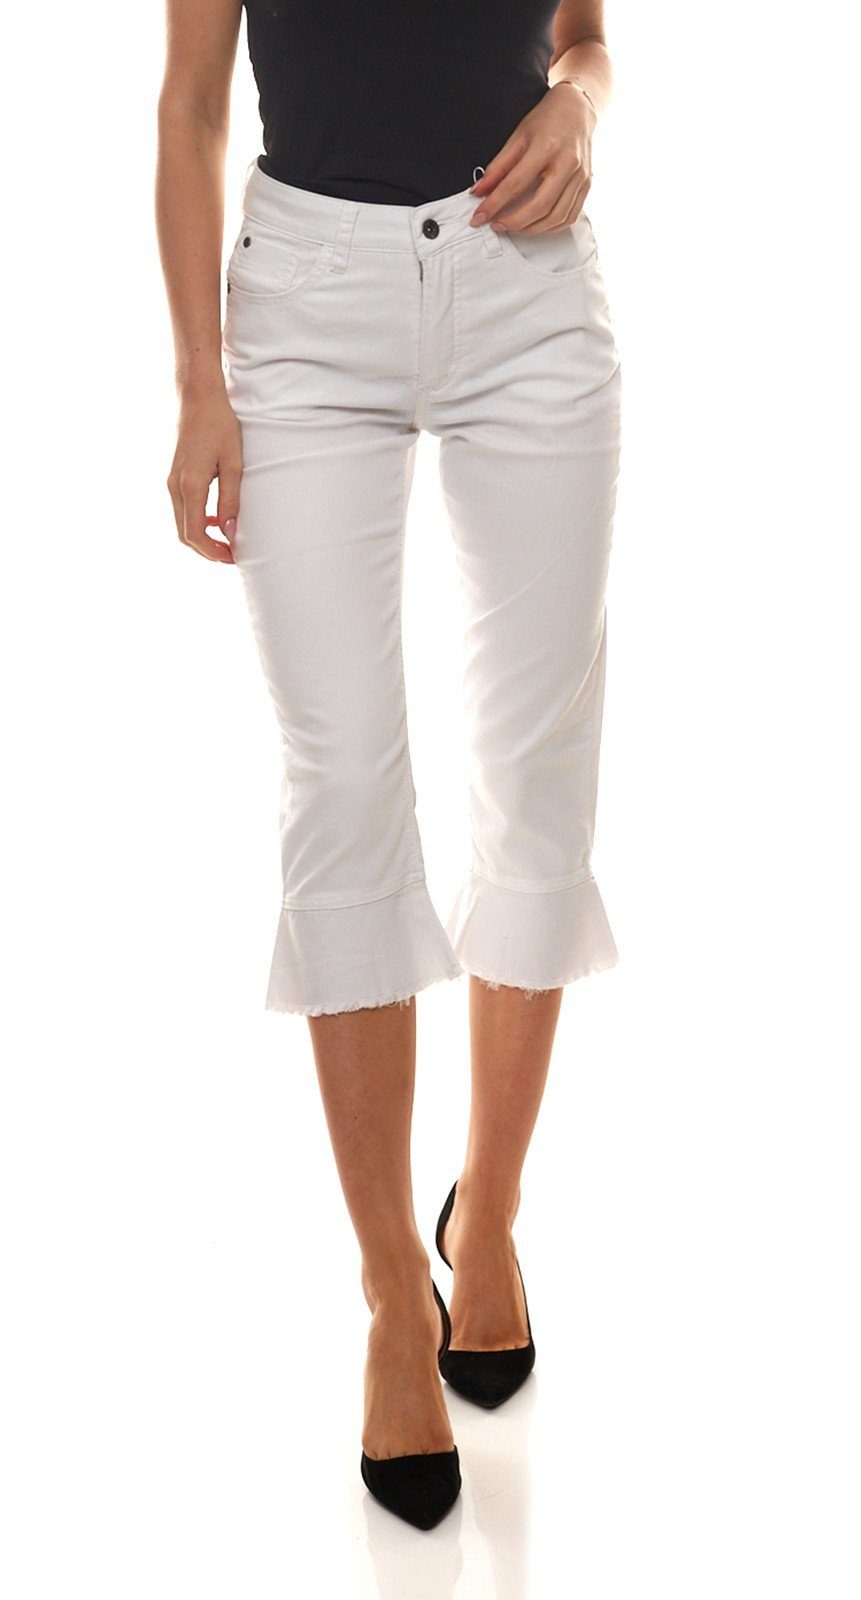 CLAIRE WOMAN Caprihose »CLAIRE WOMAN Stoff-Hose modische Damen Capri-Jeans  mit ausgefranstem Volant Freizeit-Hose Weiß« online kaufen | OTTO